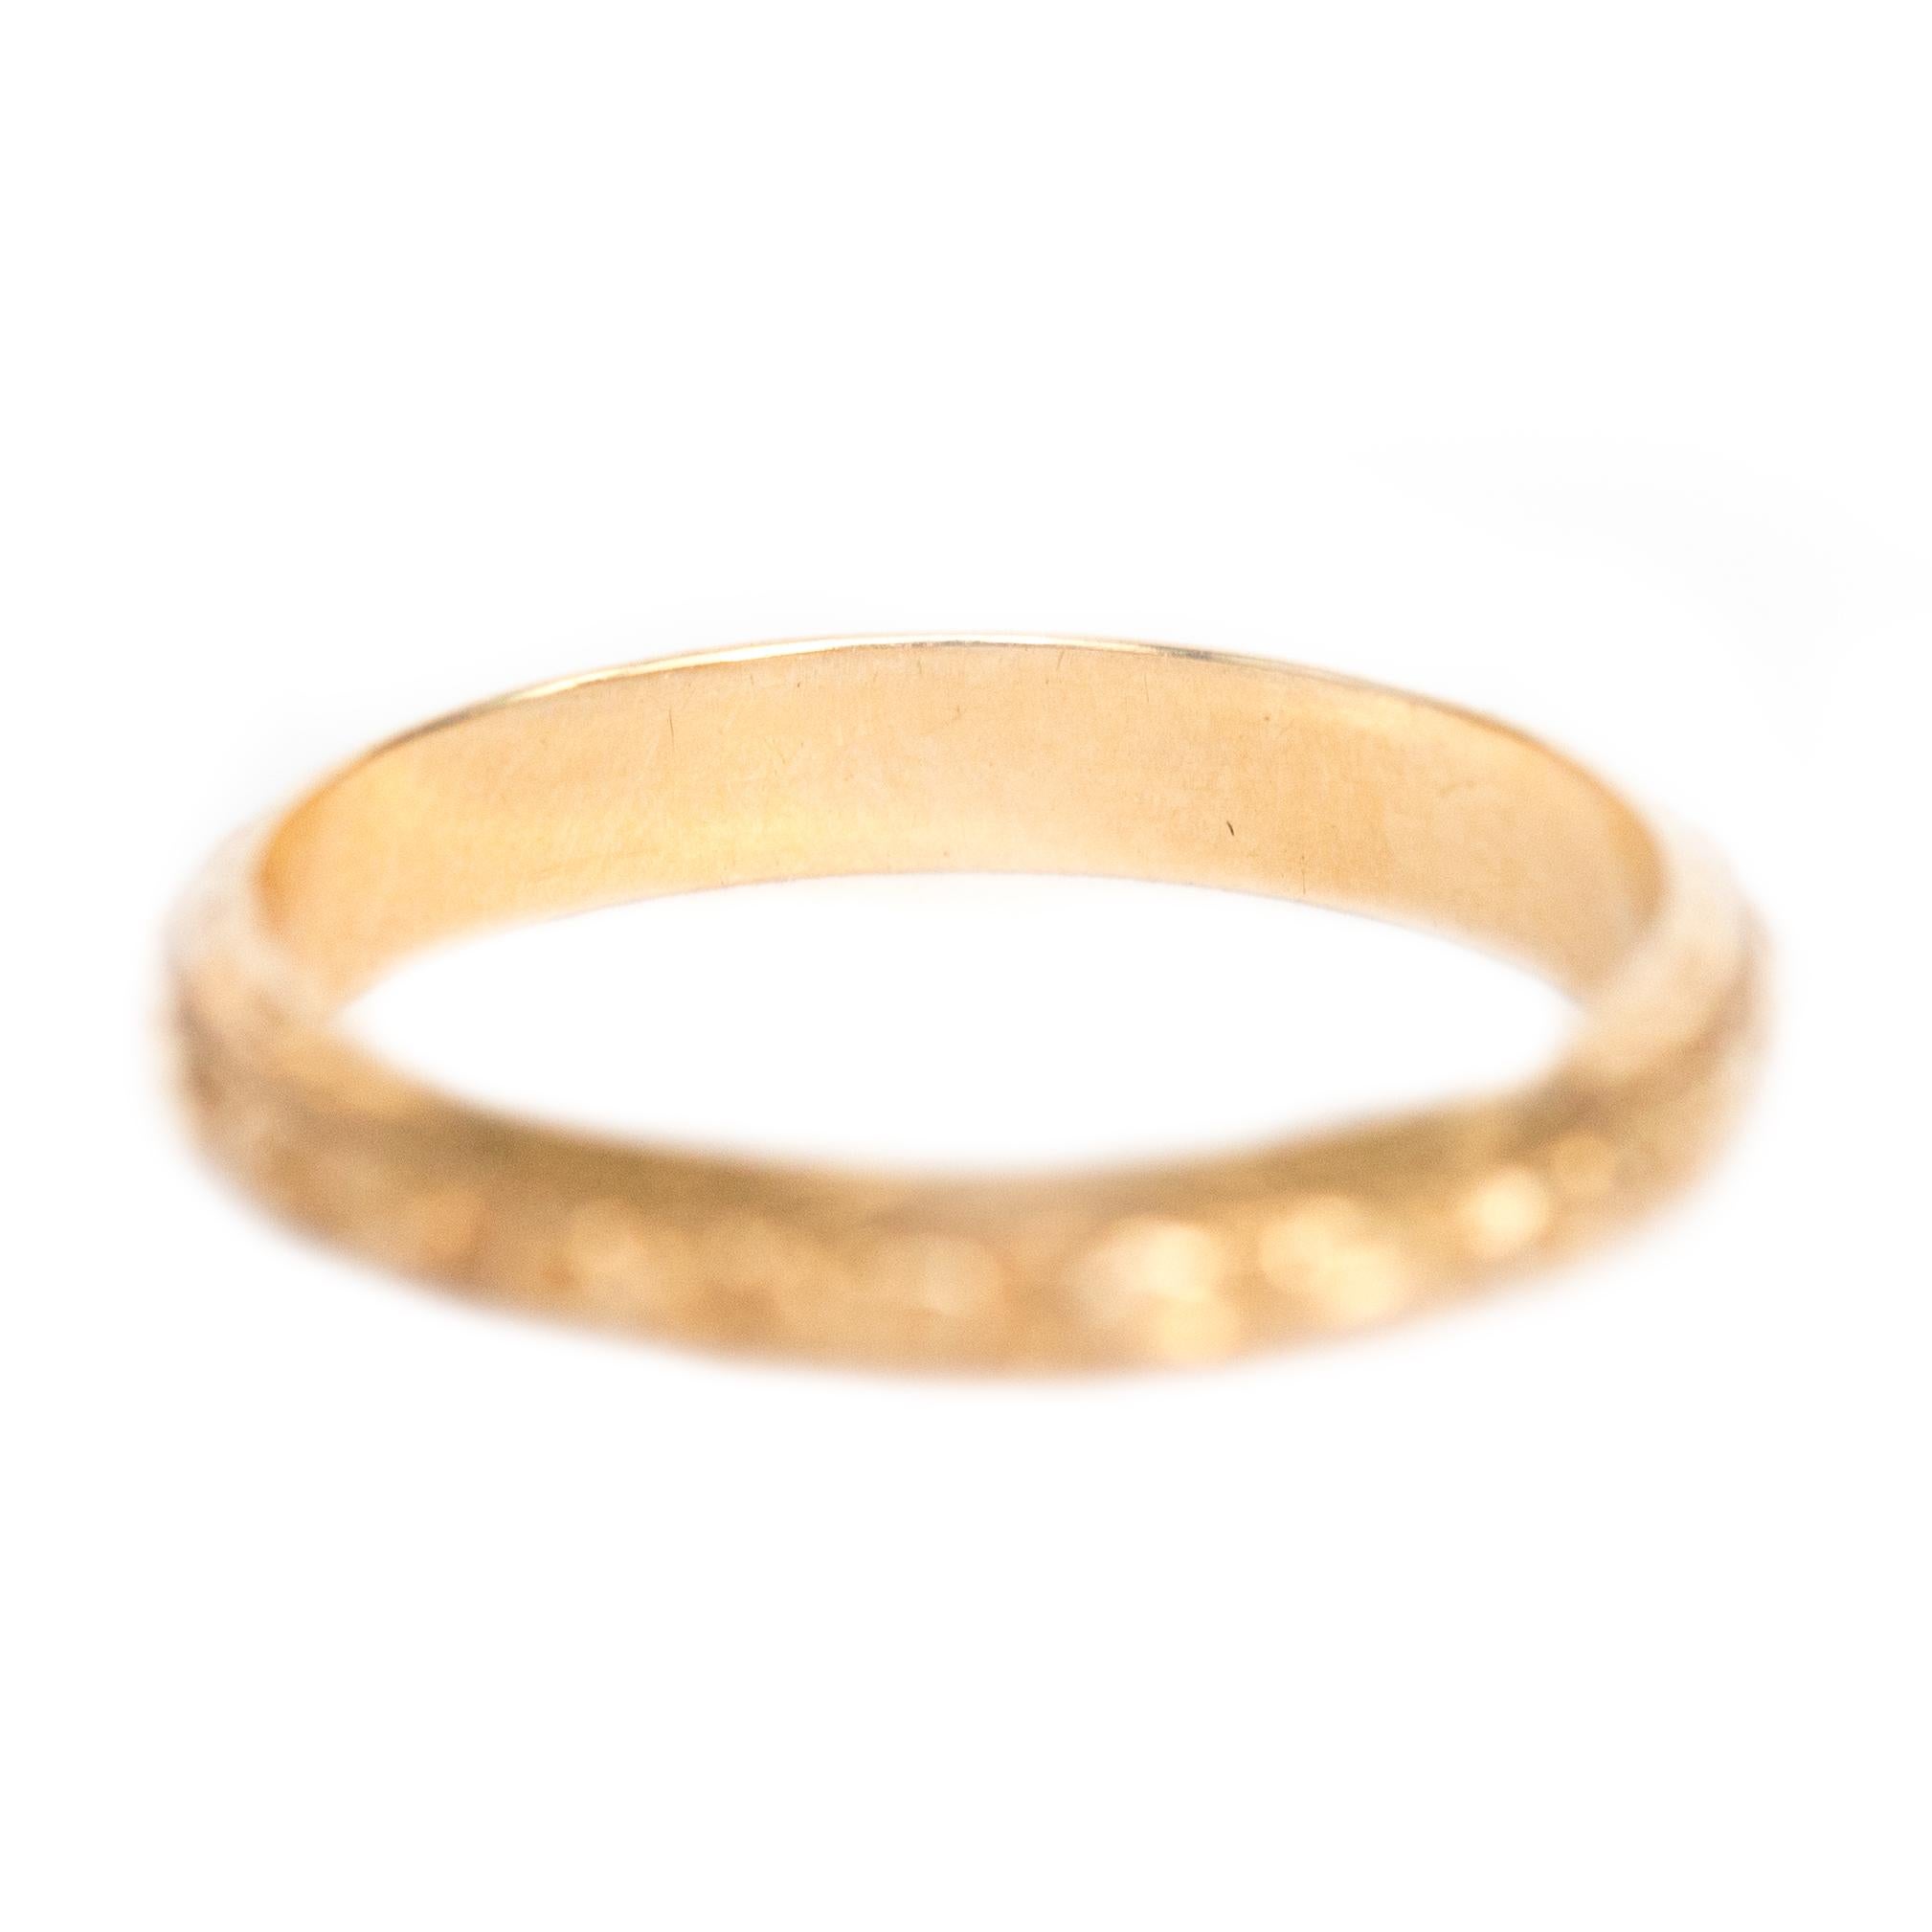 Artikel-Details: 
Ringgröße: 5.5
Metall Typ: 14 Karat Gelbgold
Gewicht: 2,1 Gramm

Finger nach oben Messung: 1.74 mm